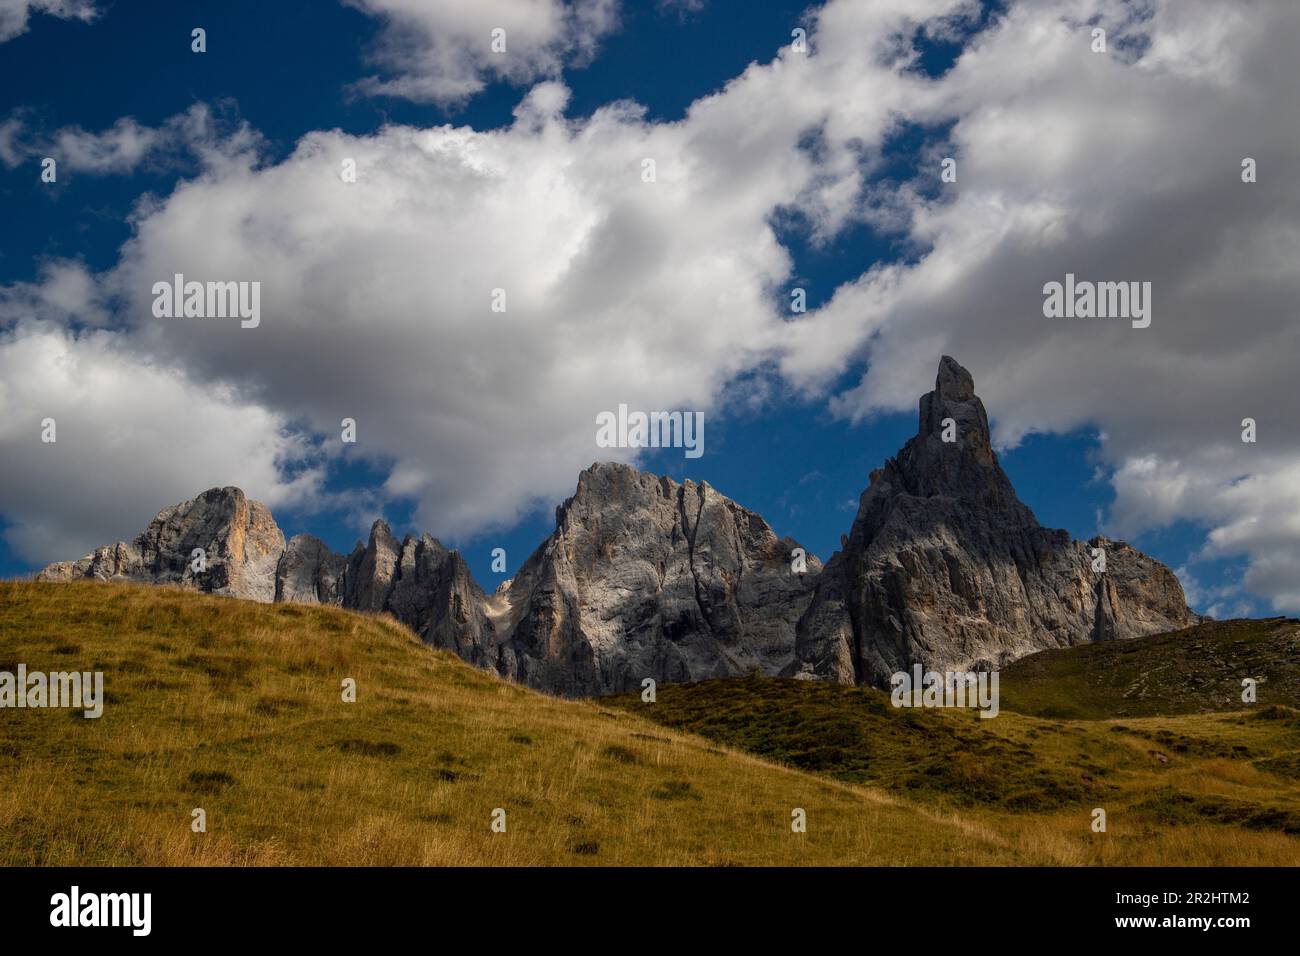 Gruppo montuoso di San Martino. Passo Rolle, Villaggio di San Martino di Castrozza, Trento, Trentino Alto Adige, Italia Foto Stock